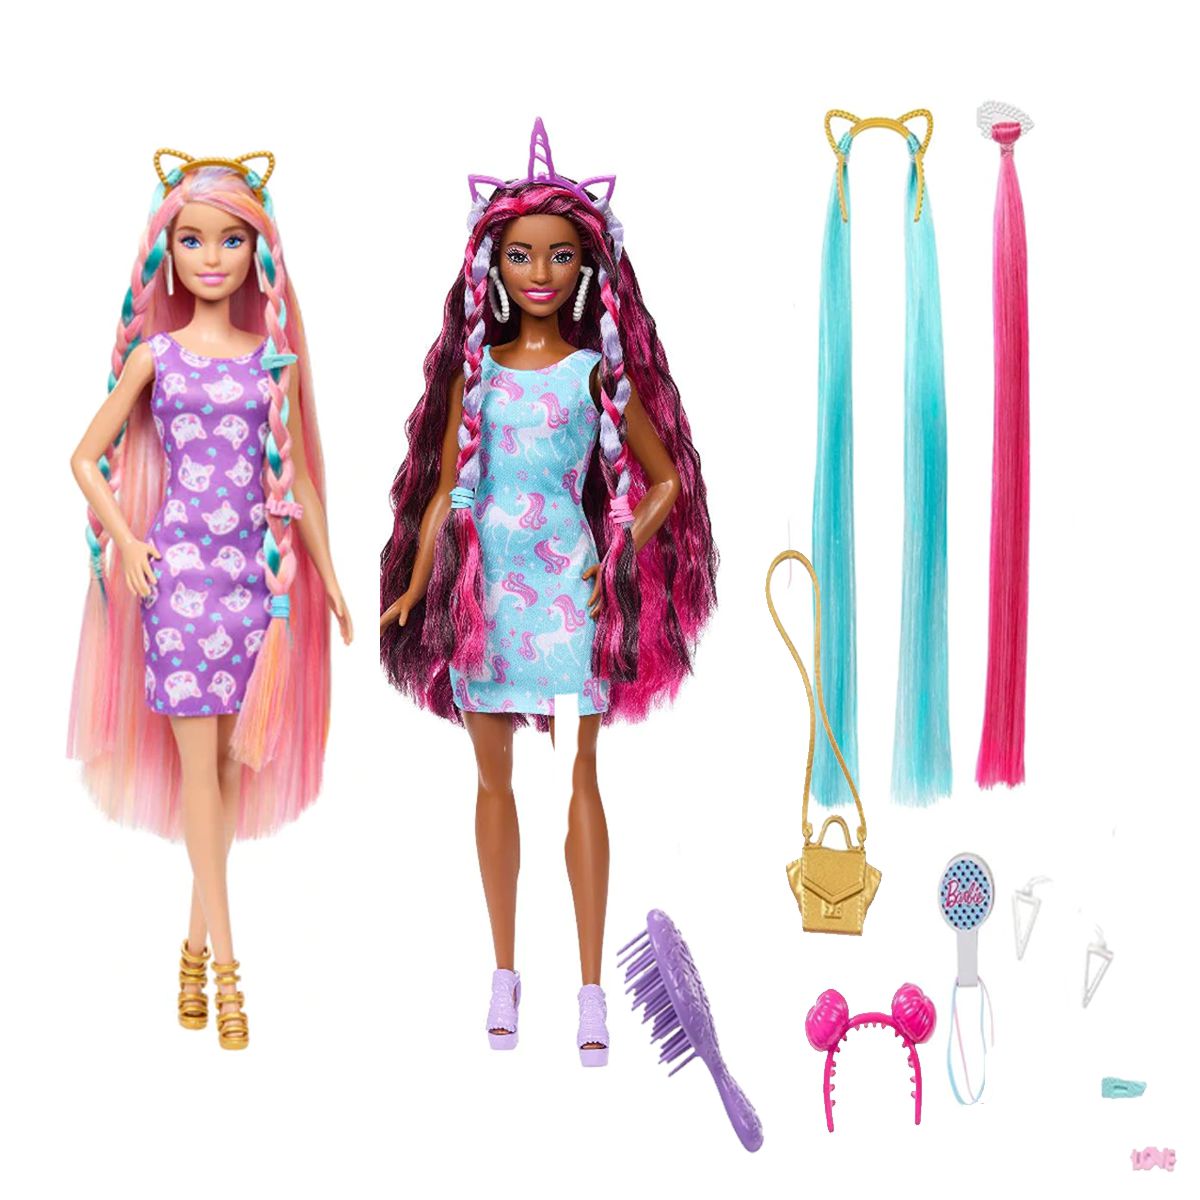 Jogos com a boneca sereia! Série infantil das bonecas Barbie